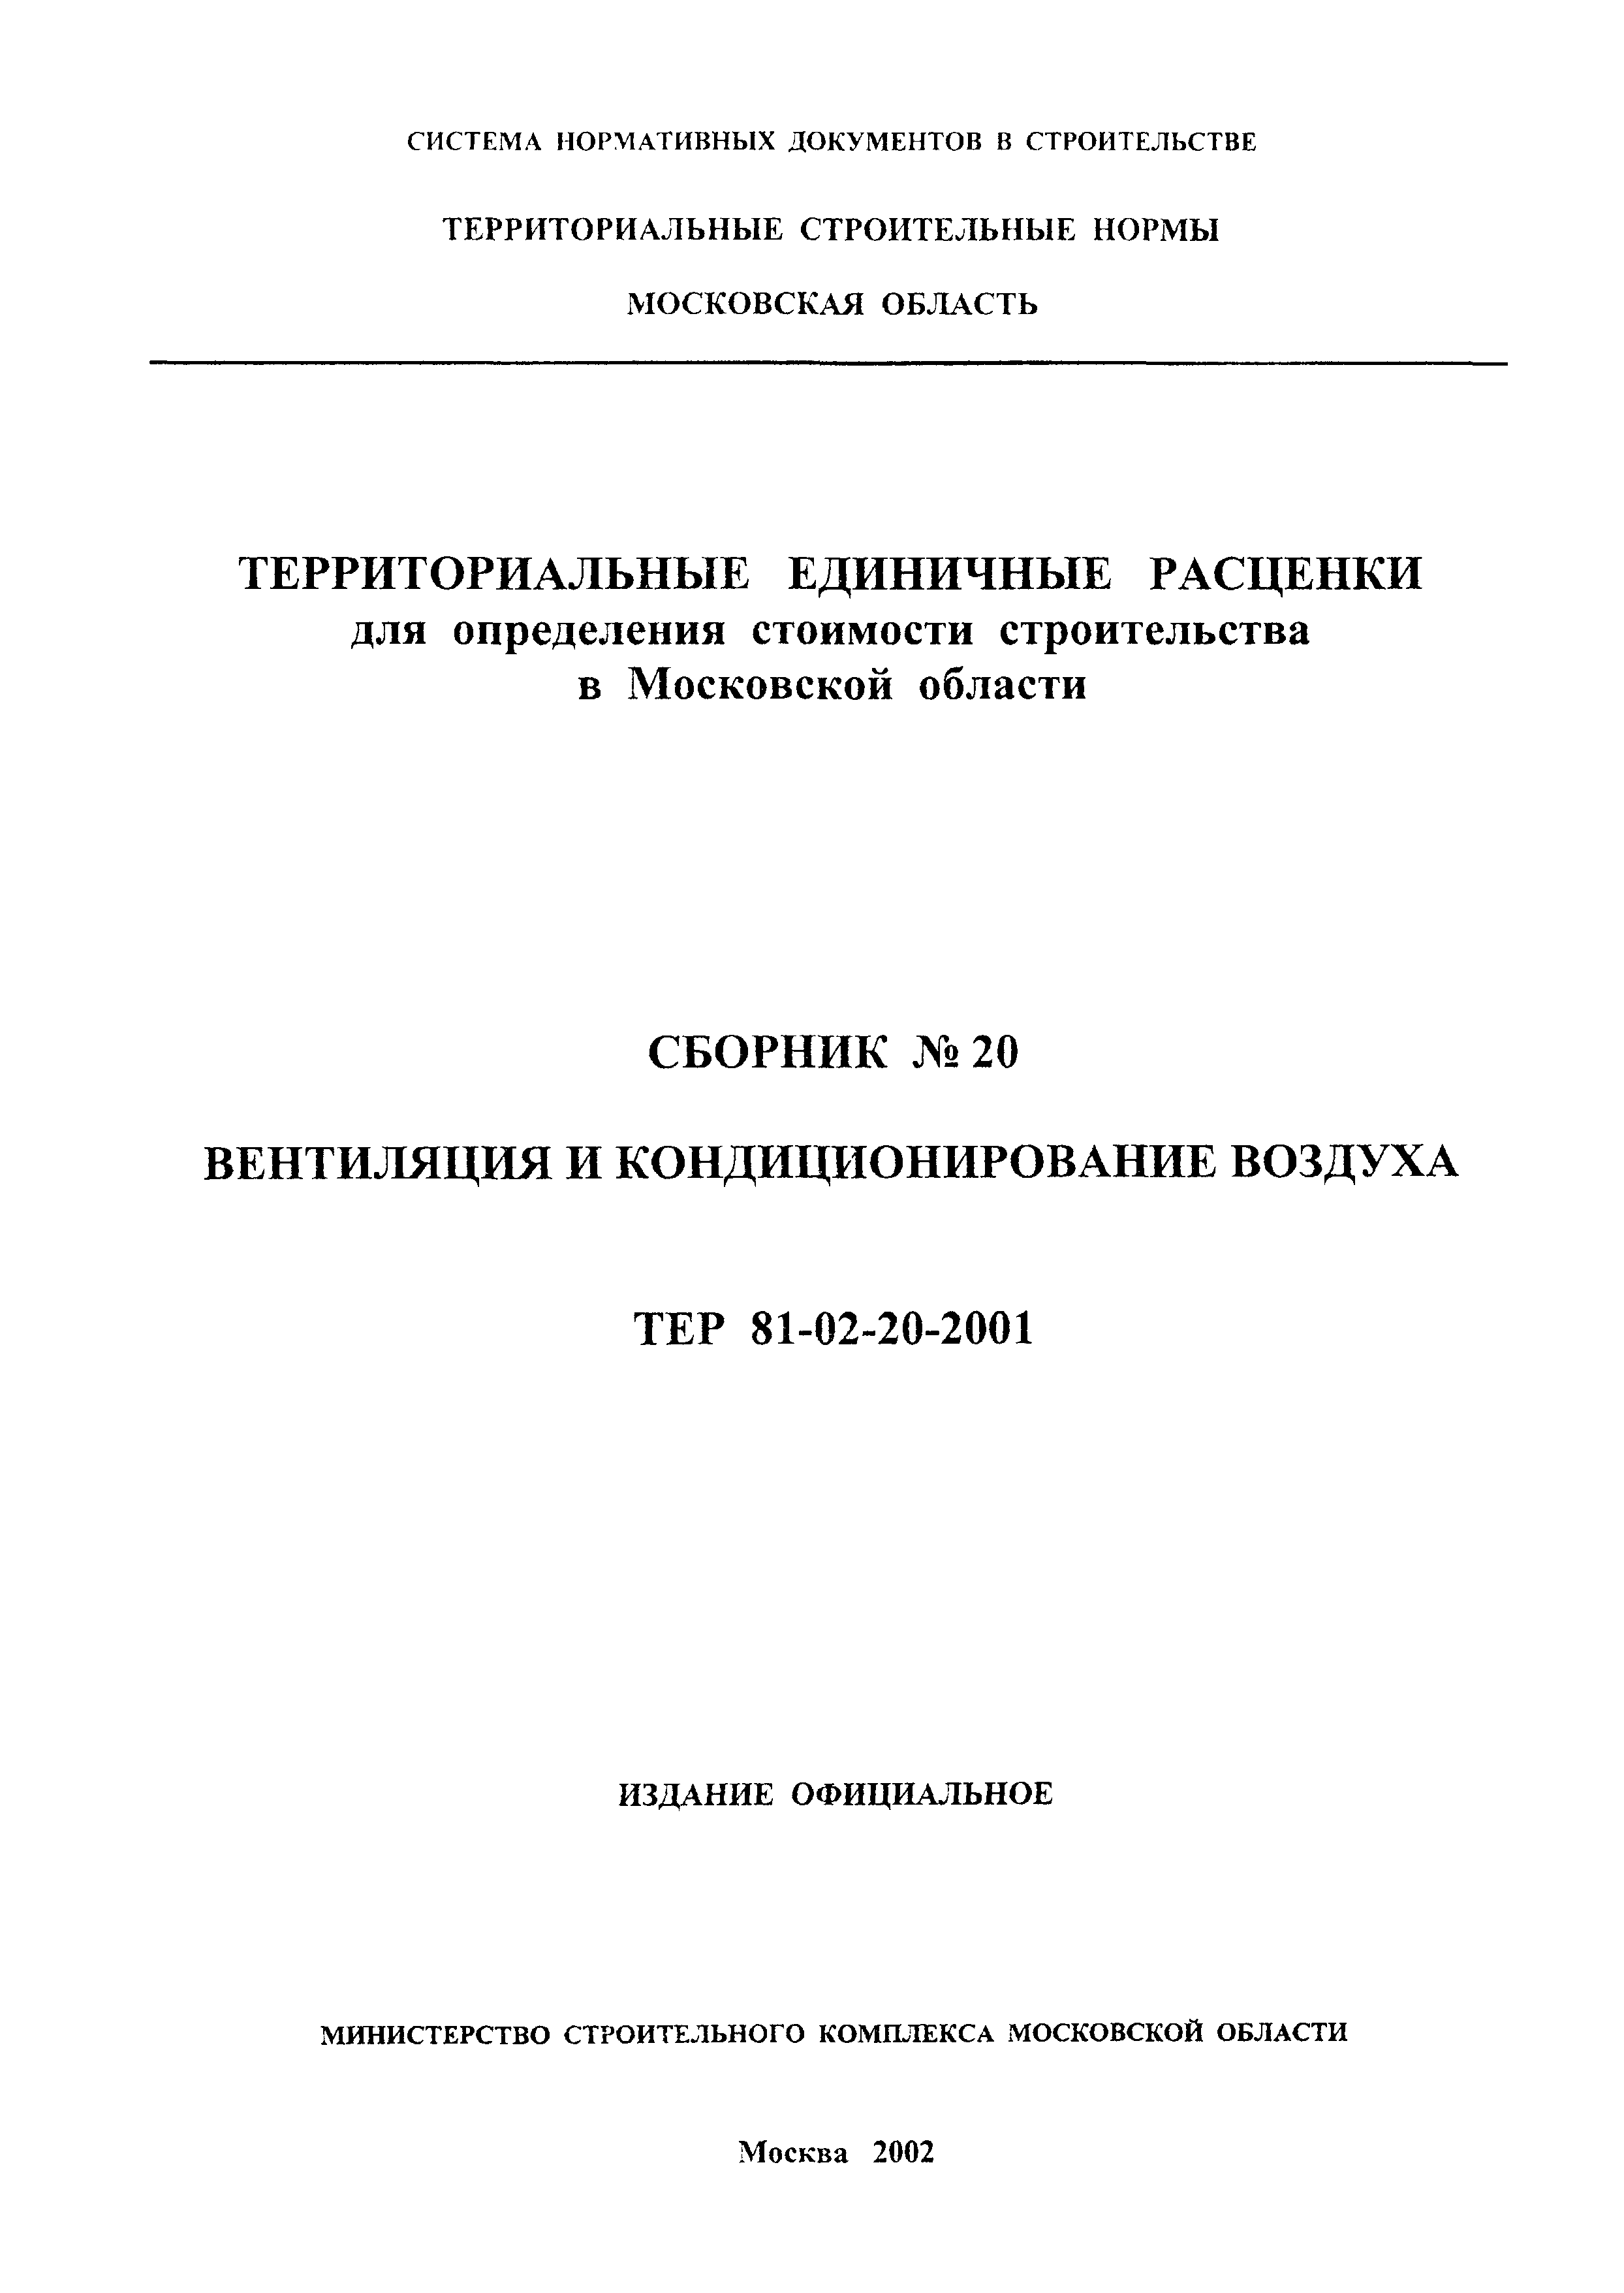 ТЕР 2001-20 Московской области